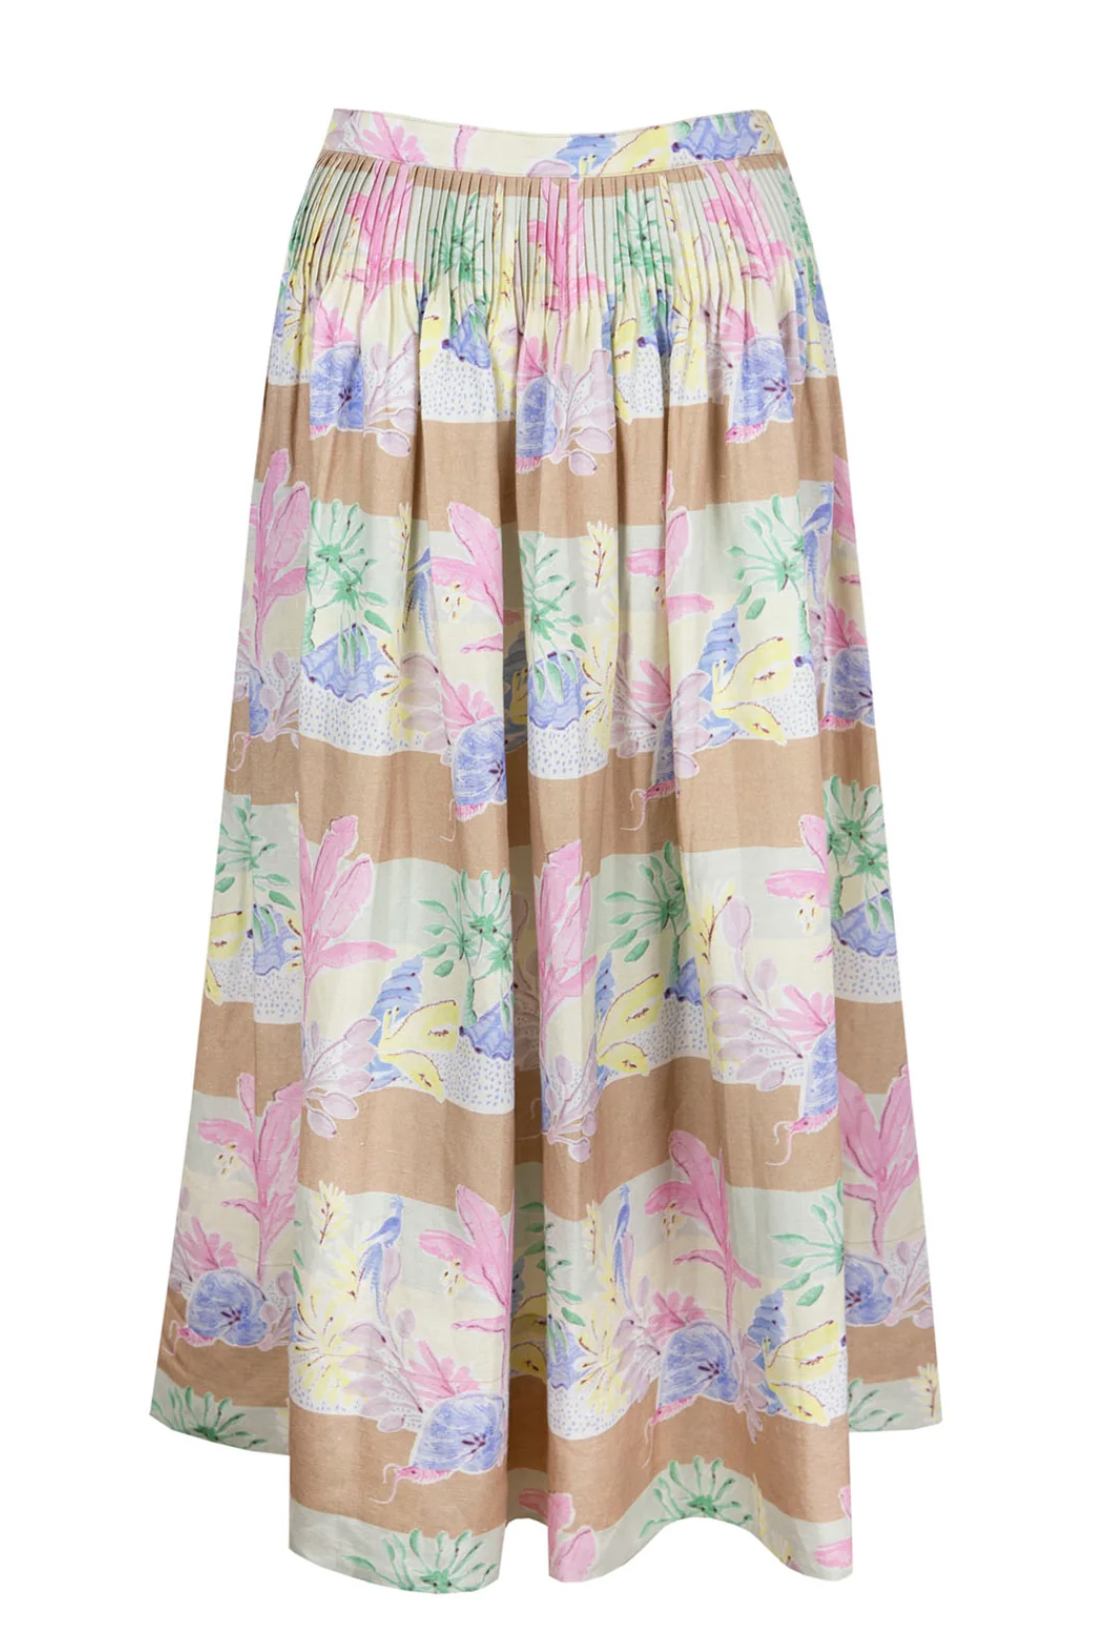 Fallon Skirt - Pastel Paradise